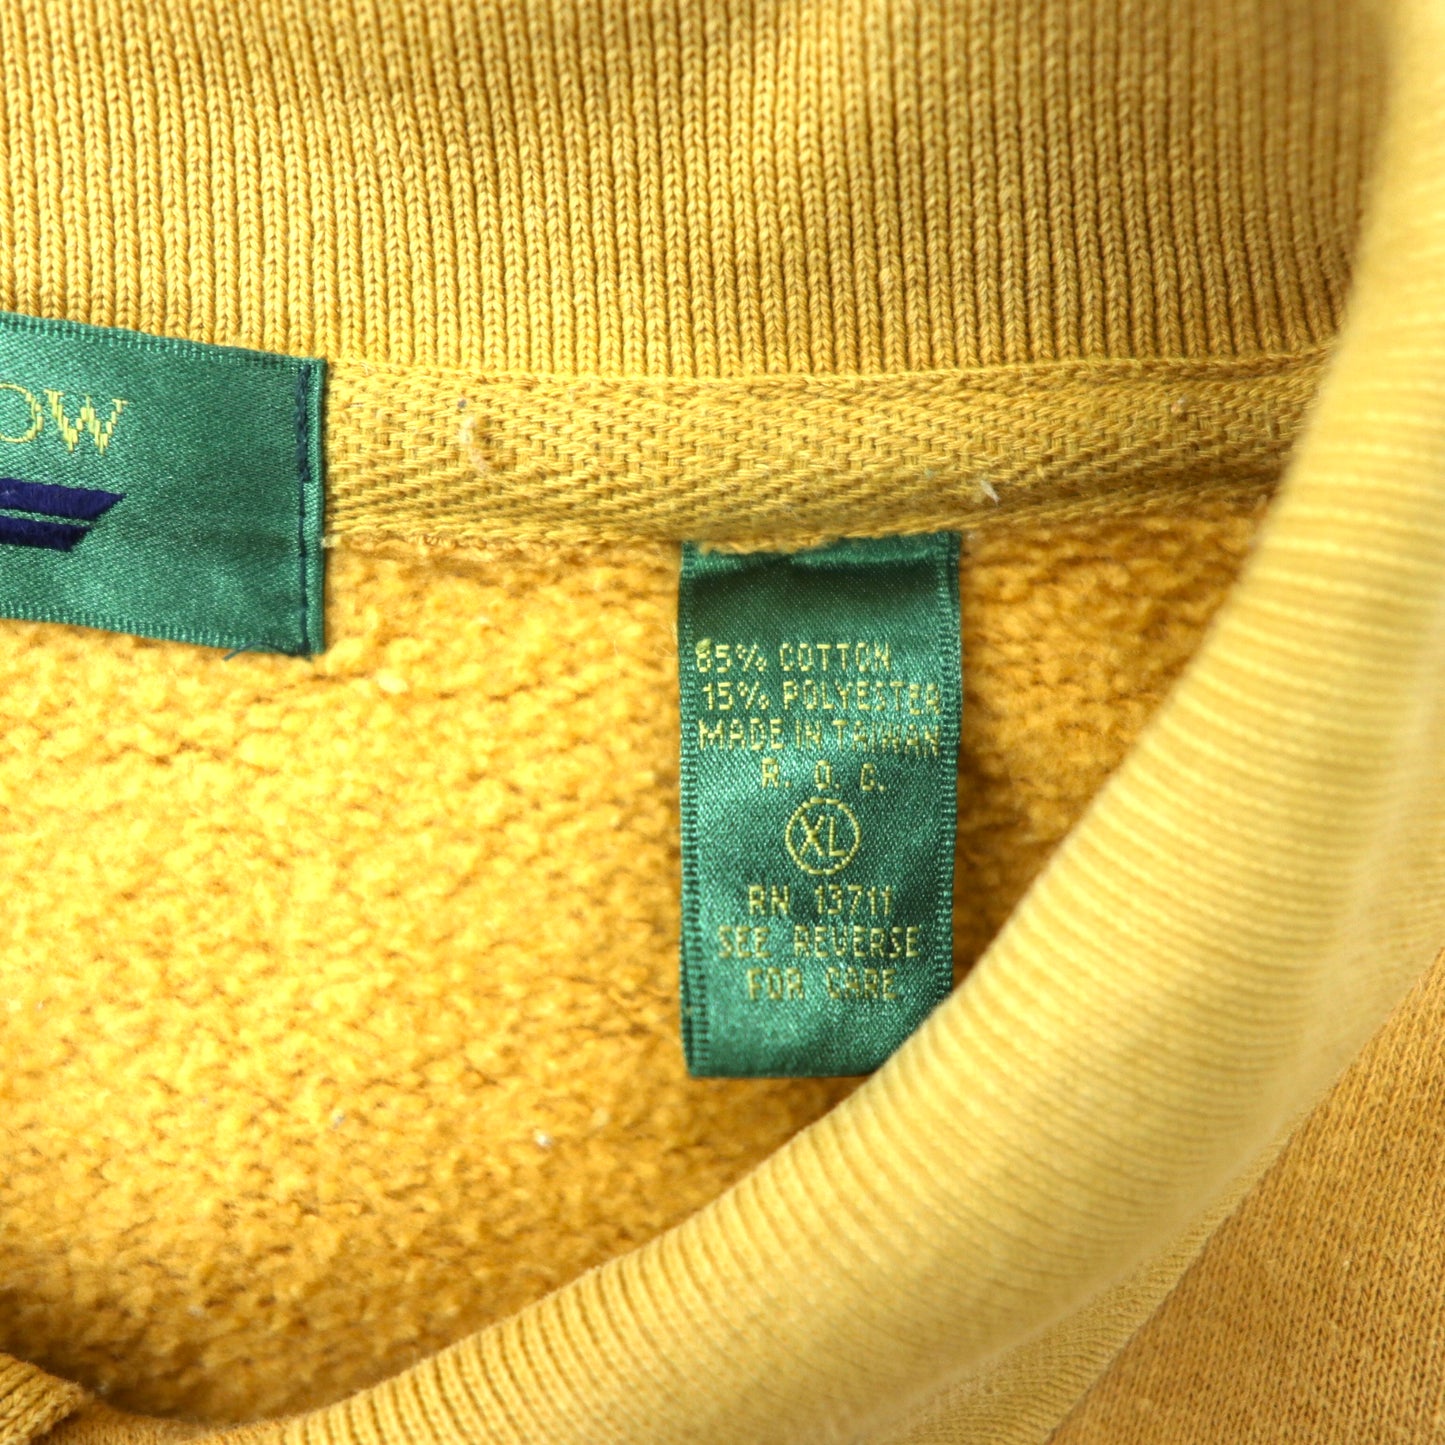 EMBASSY ROW 90年代 レトロ ポロスウェットシャツ XL ベージュ コットン 裏起毛 魚 フィッシング 刺繍 ビッグサイズ